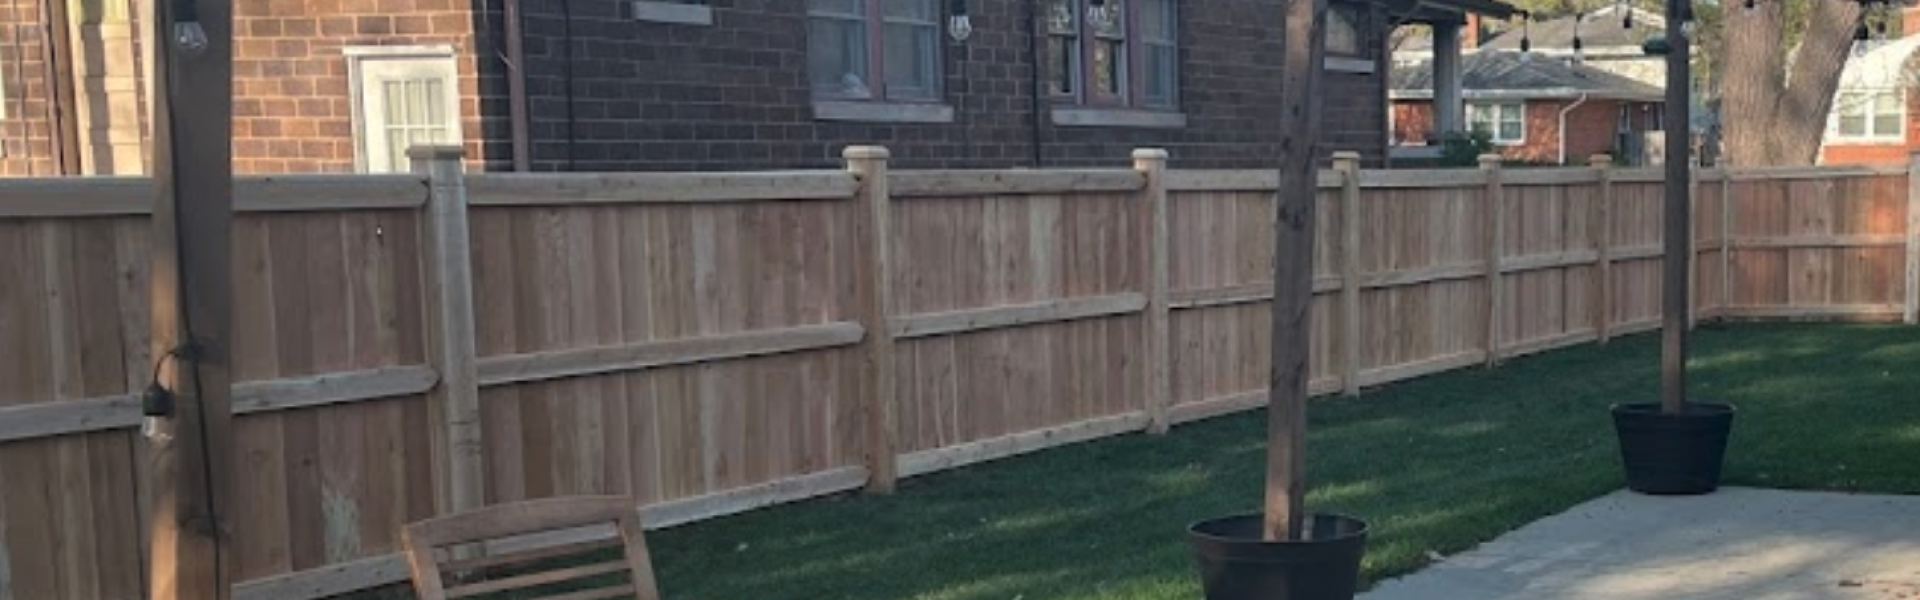 Cedar Wood Fence in Patio yard